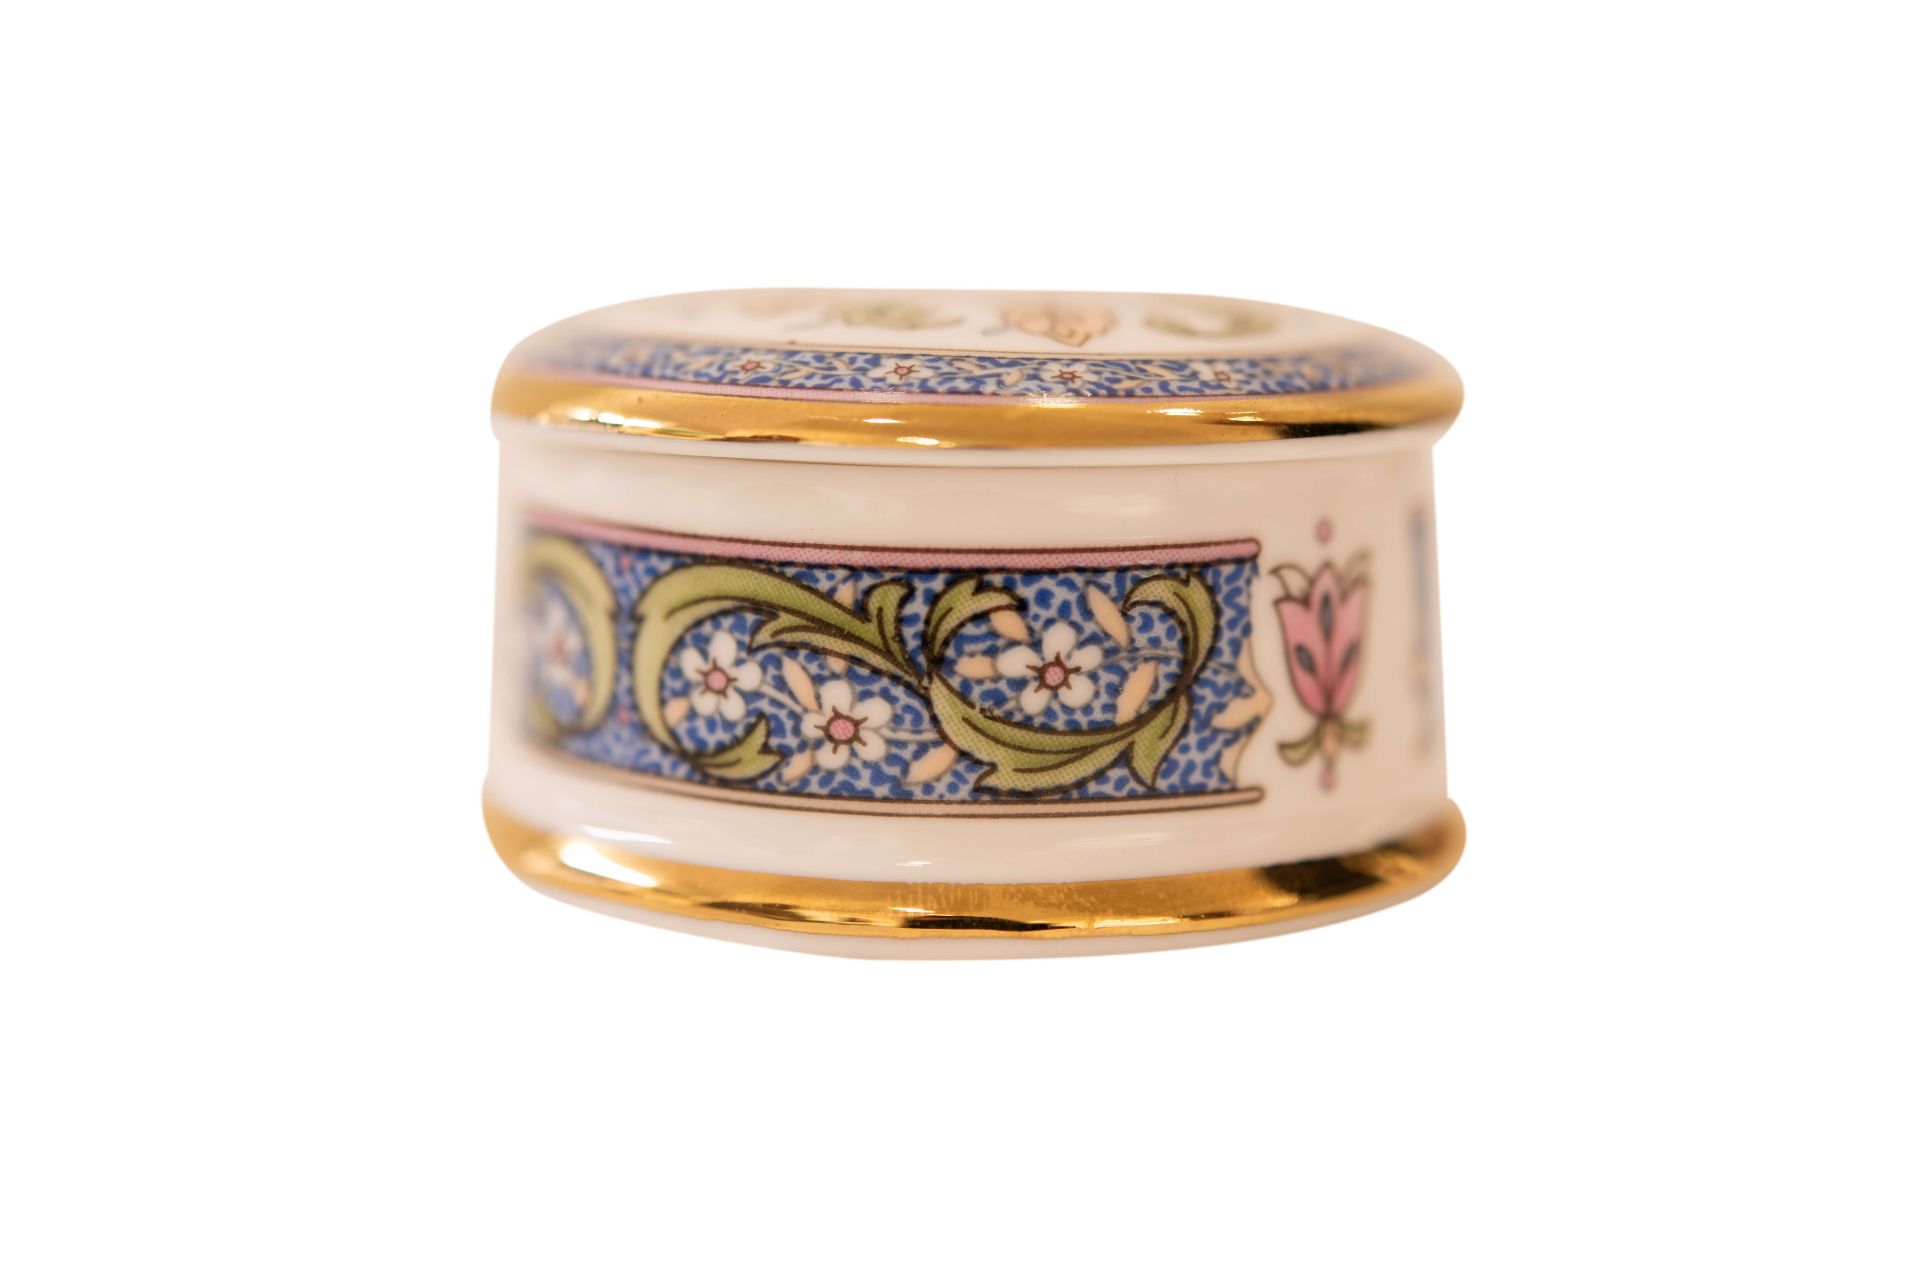 Florial Victoriana Falcon Schmuckkästchen |Florial Victoriana Falcon Jewelry Box - Image 2 of 5